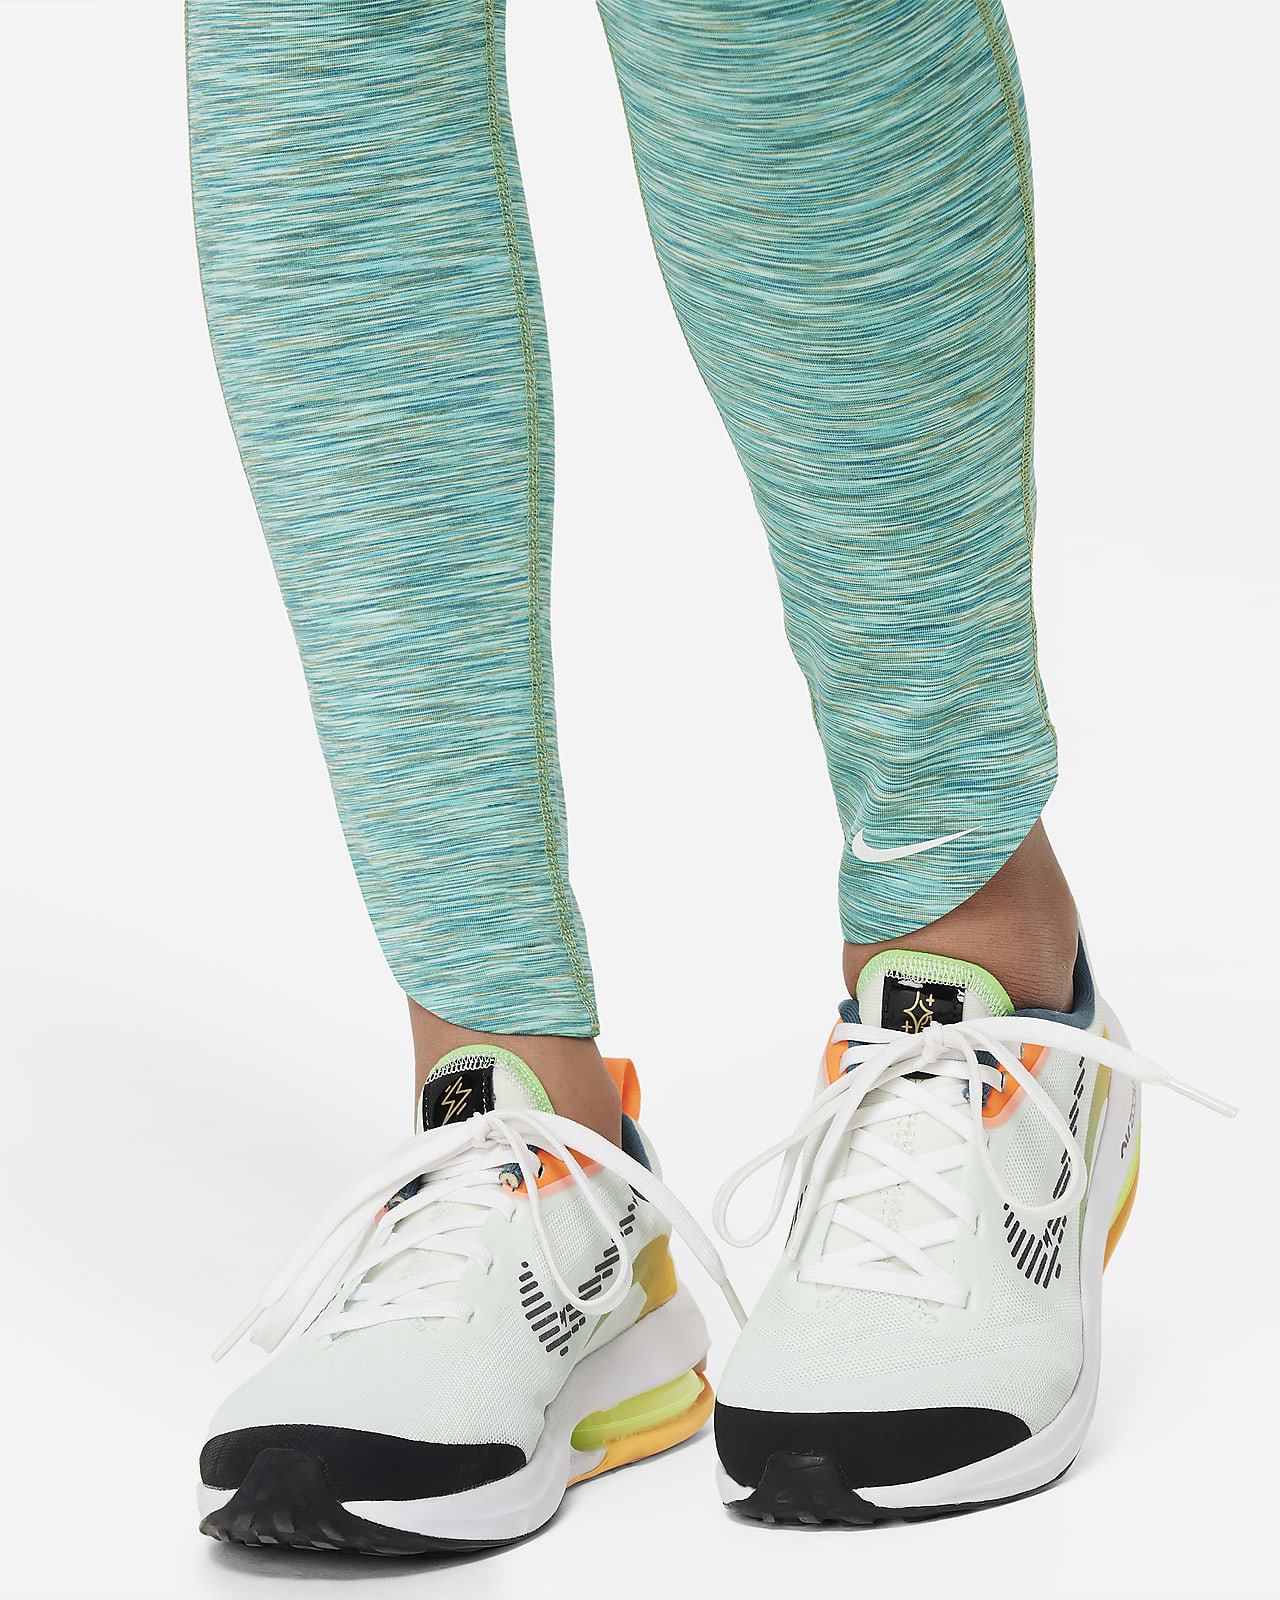 Nike Nike Dri-FIT One Legging - Girls